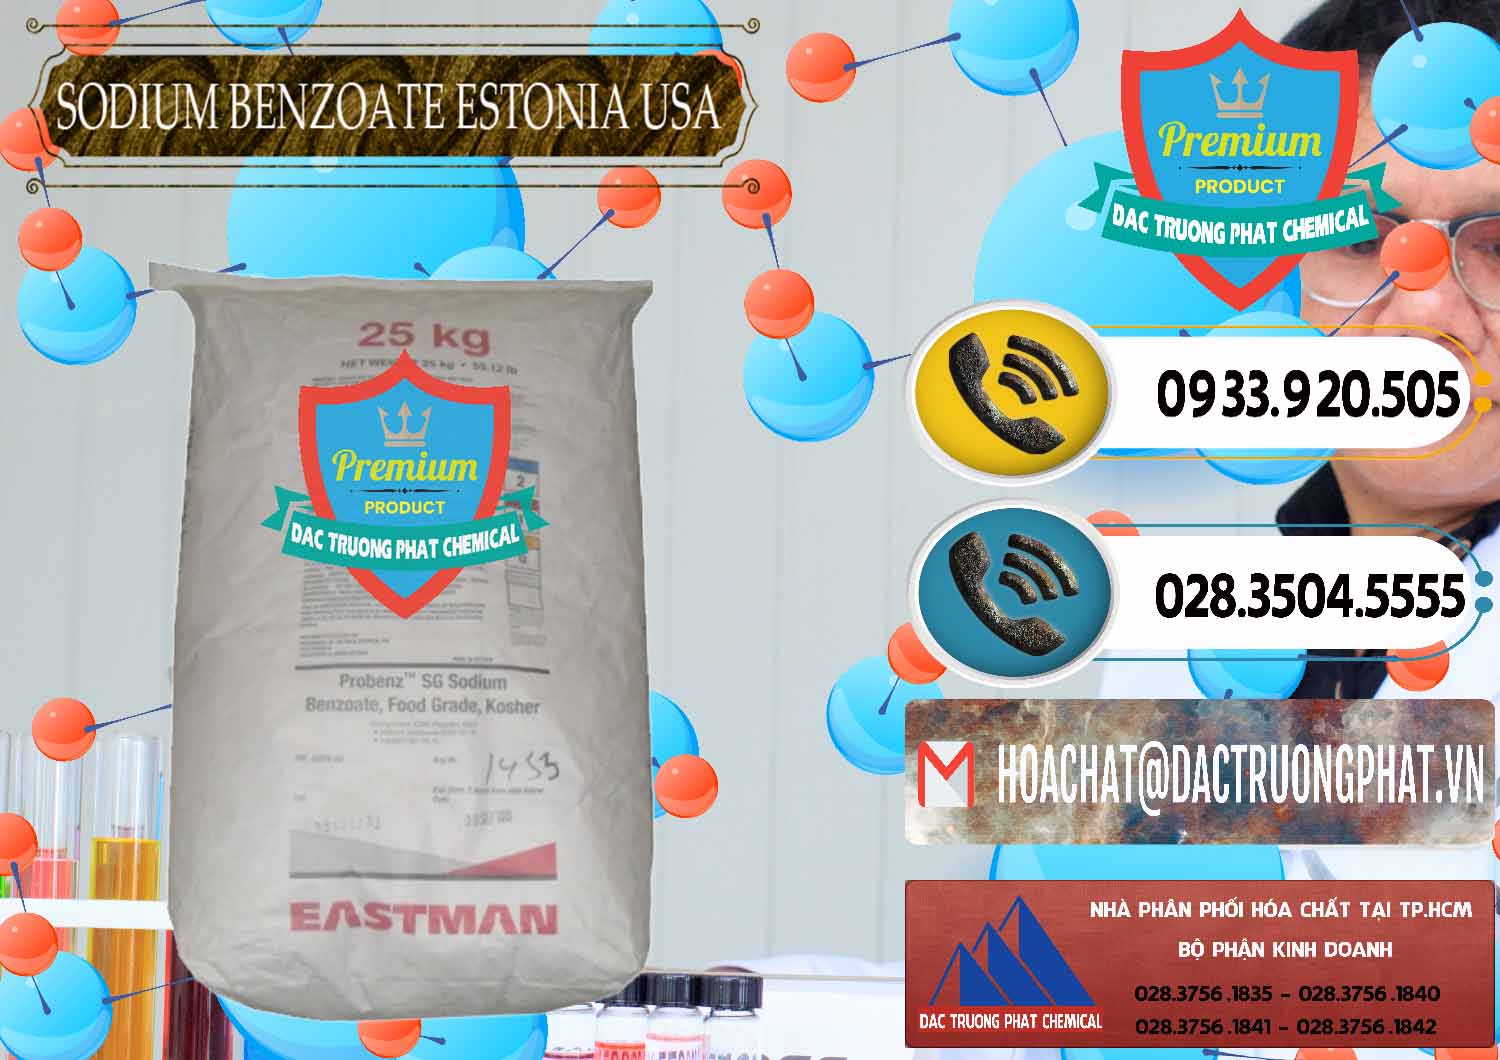 Cty chuyên bán và cung ứng Sodium Benzoate - Mốc Bột Estonia Mỹ USA - 0468 - Nhà cung ứng _ phân phối hóa chất tại TP.HCM - hoachatdetnhuom.vn